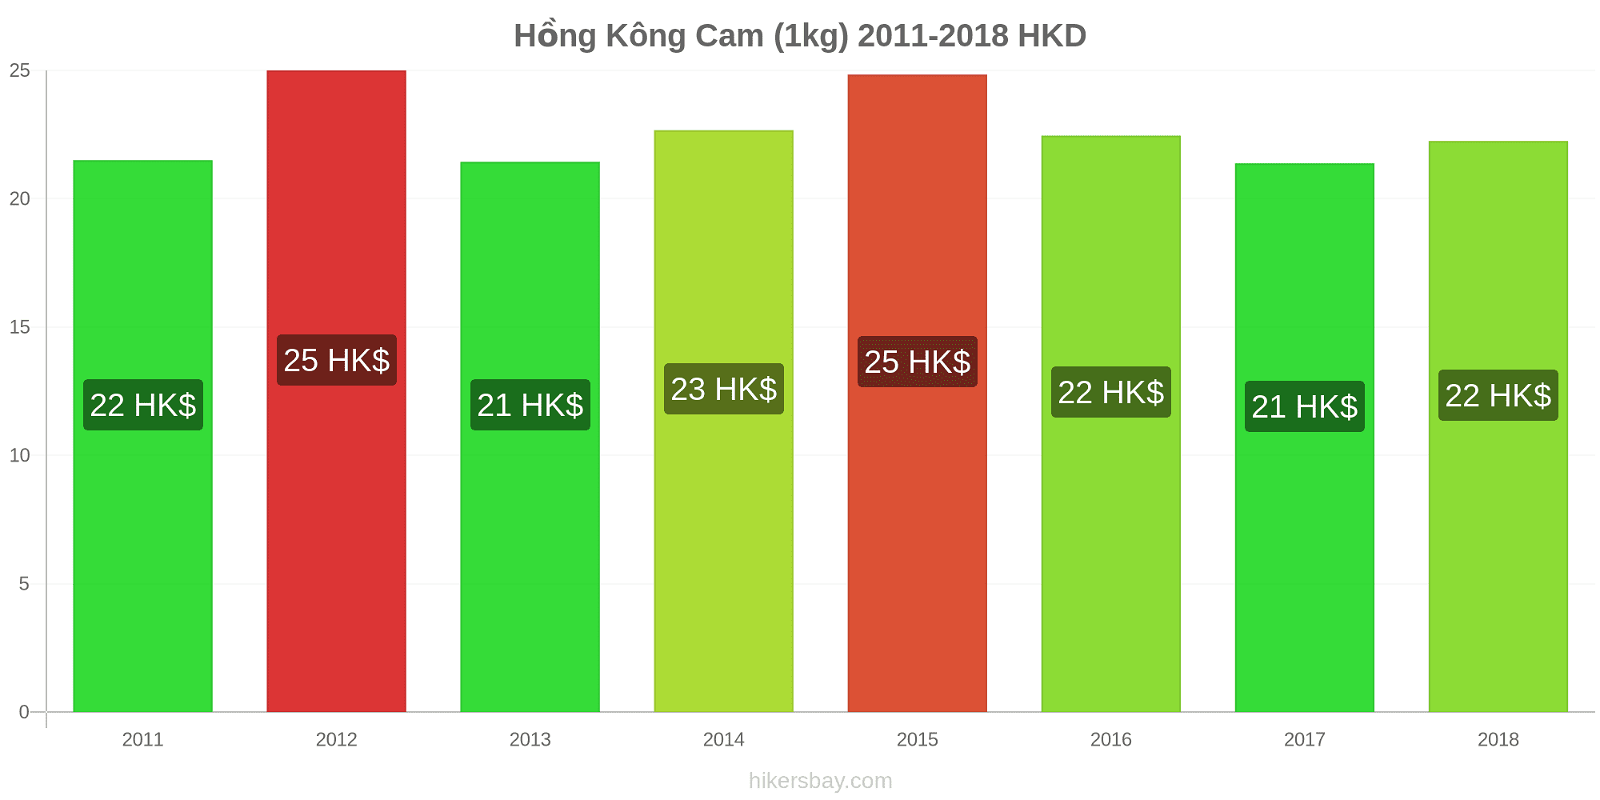 Hồng Kông thay đổi giá cả Cam (1kg) hikersbay.com